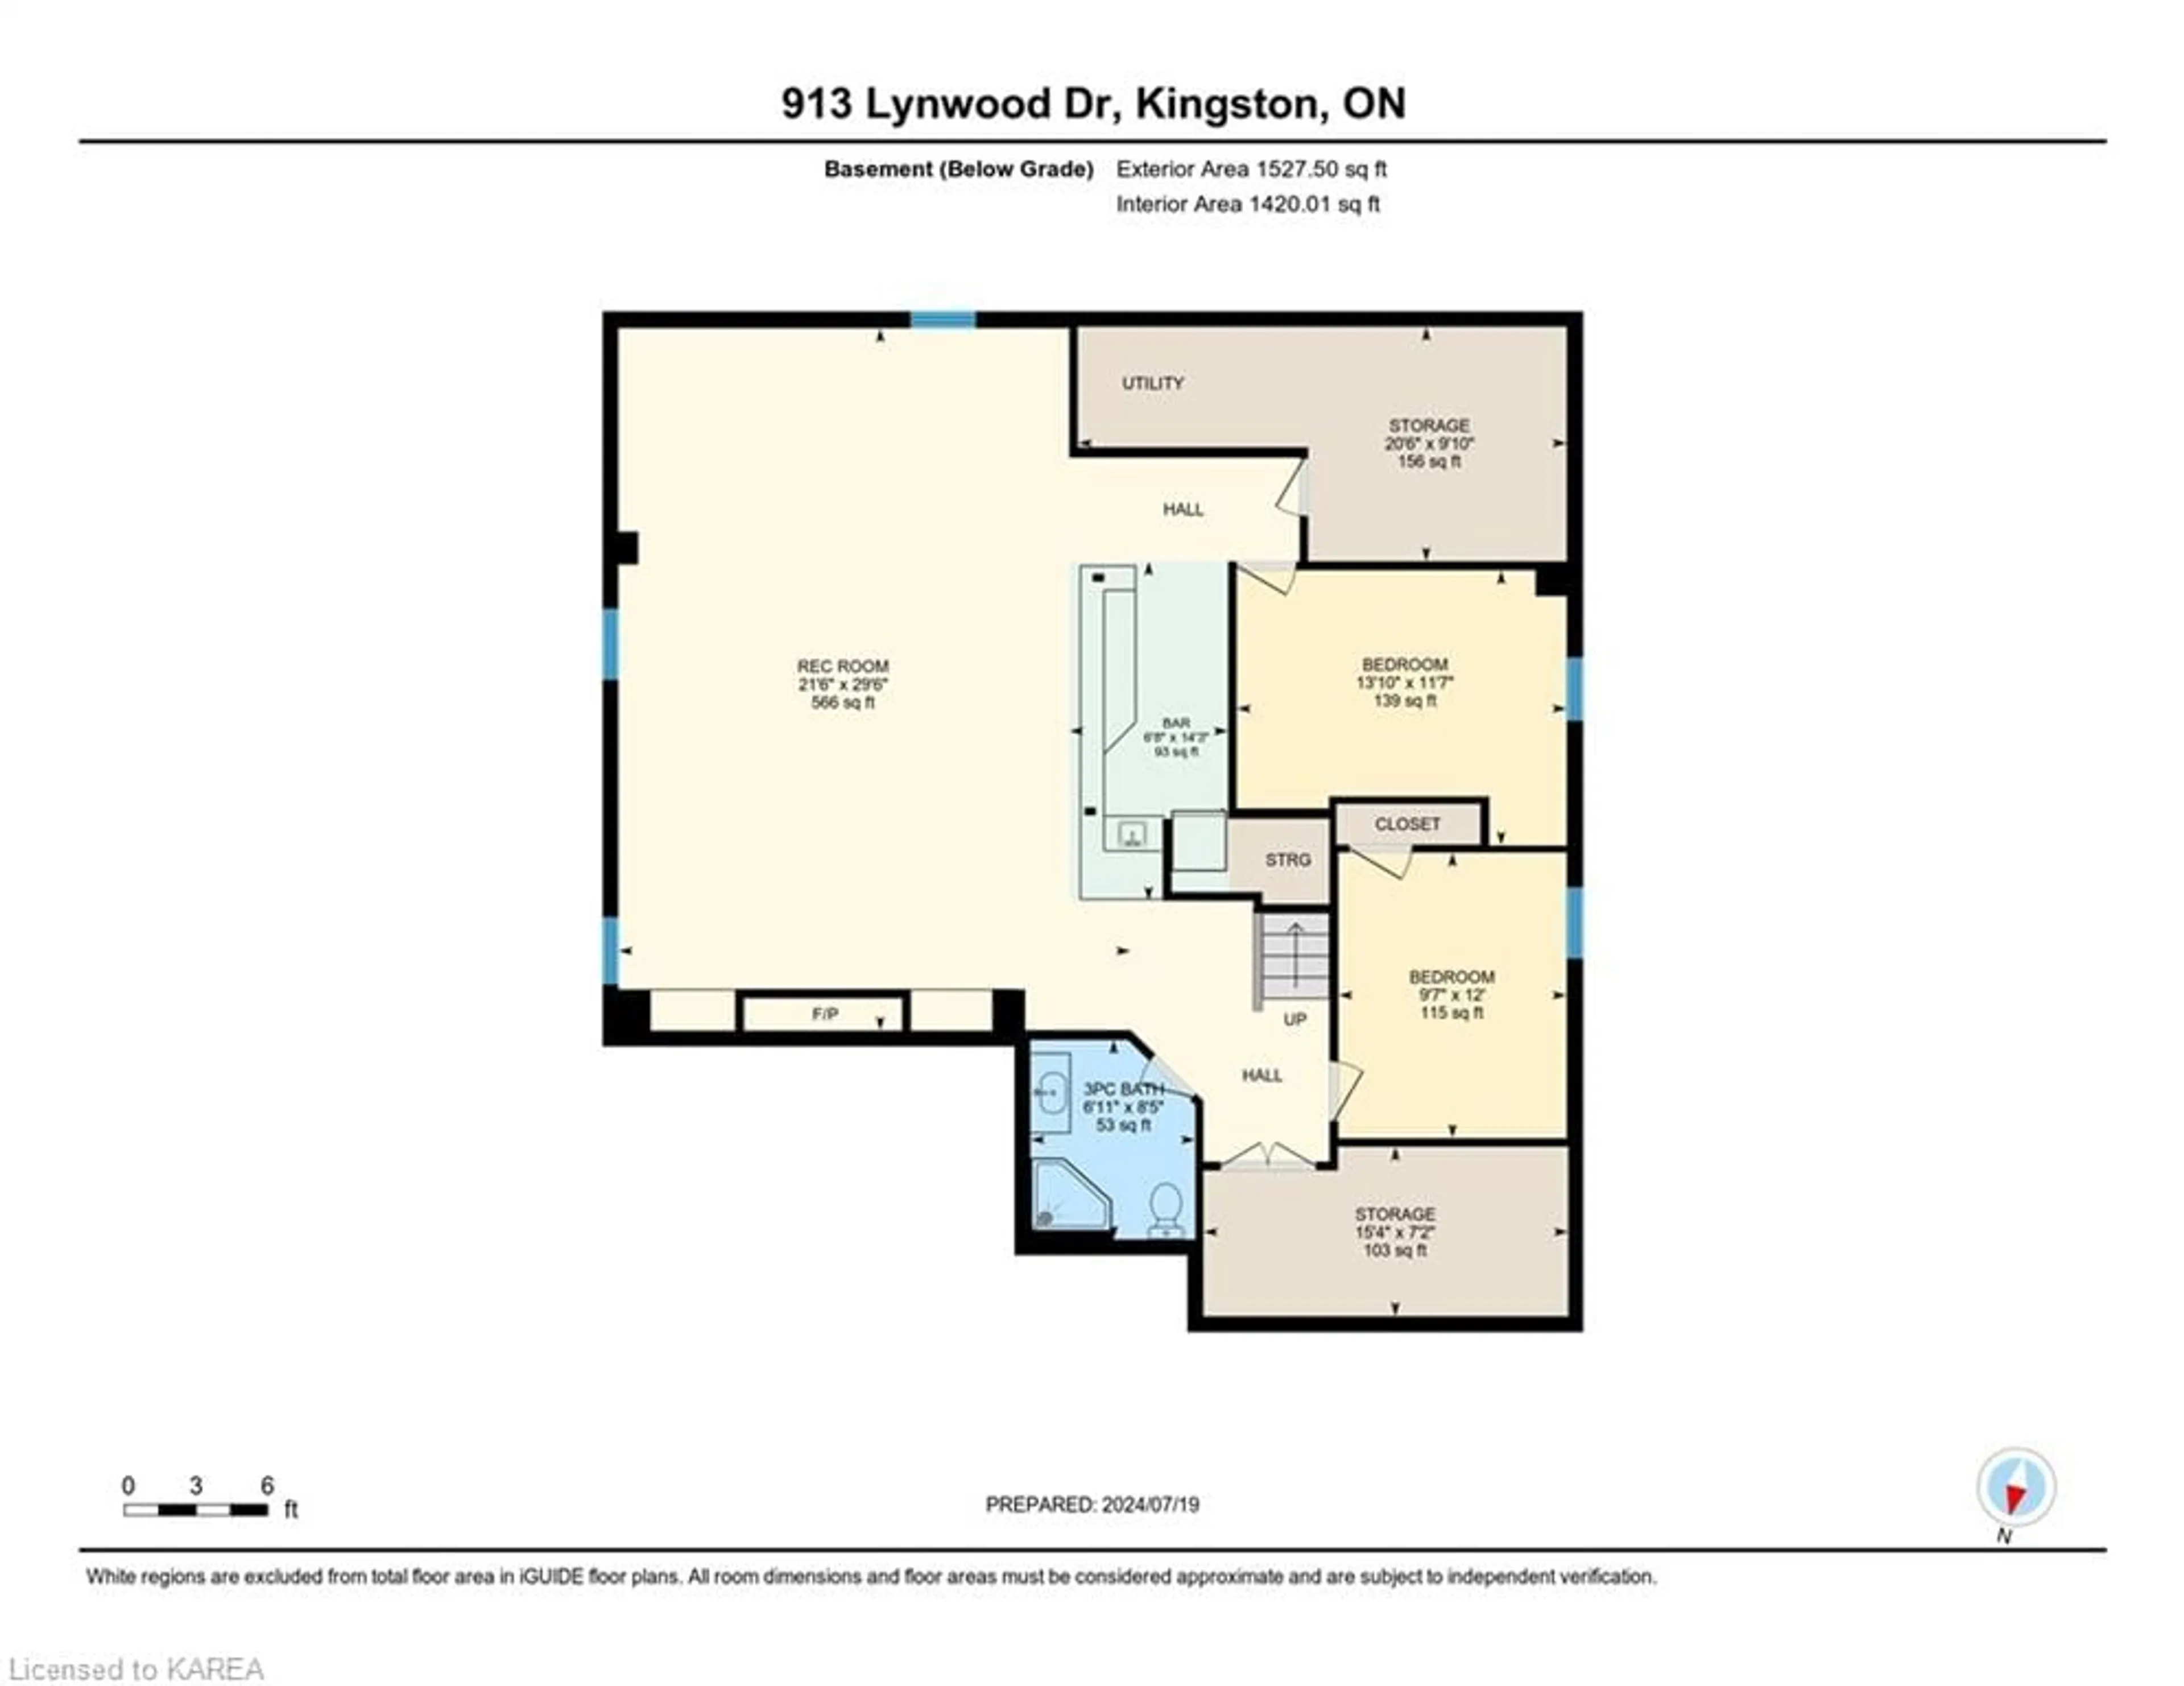 Floor plan for 913 Lynwood Dr, Kingston Ontario K7P 2K8